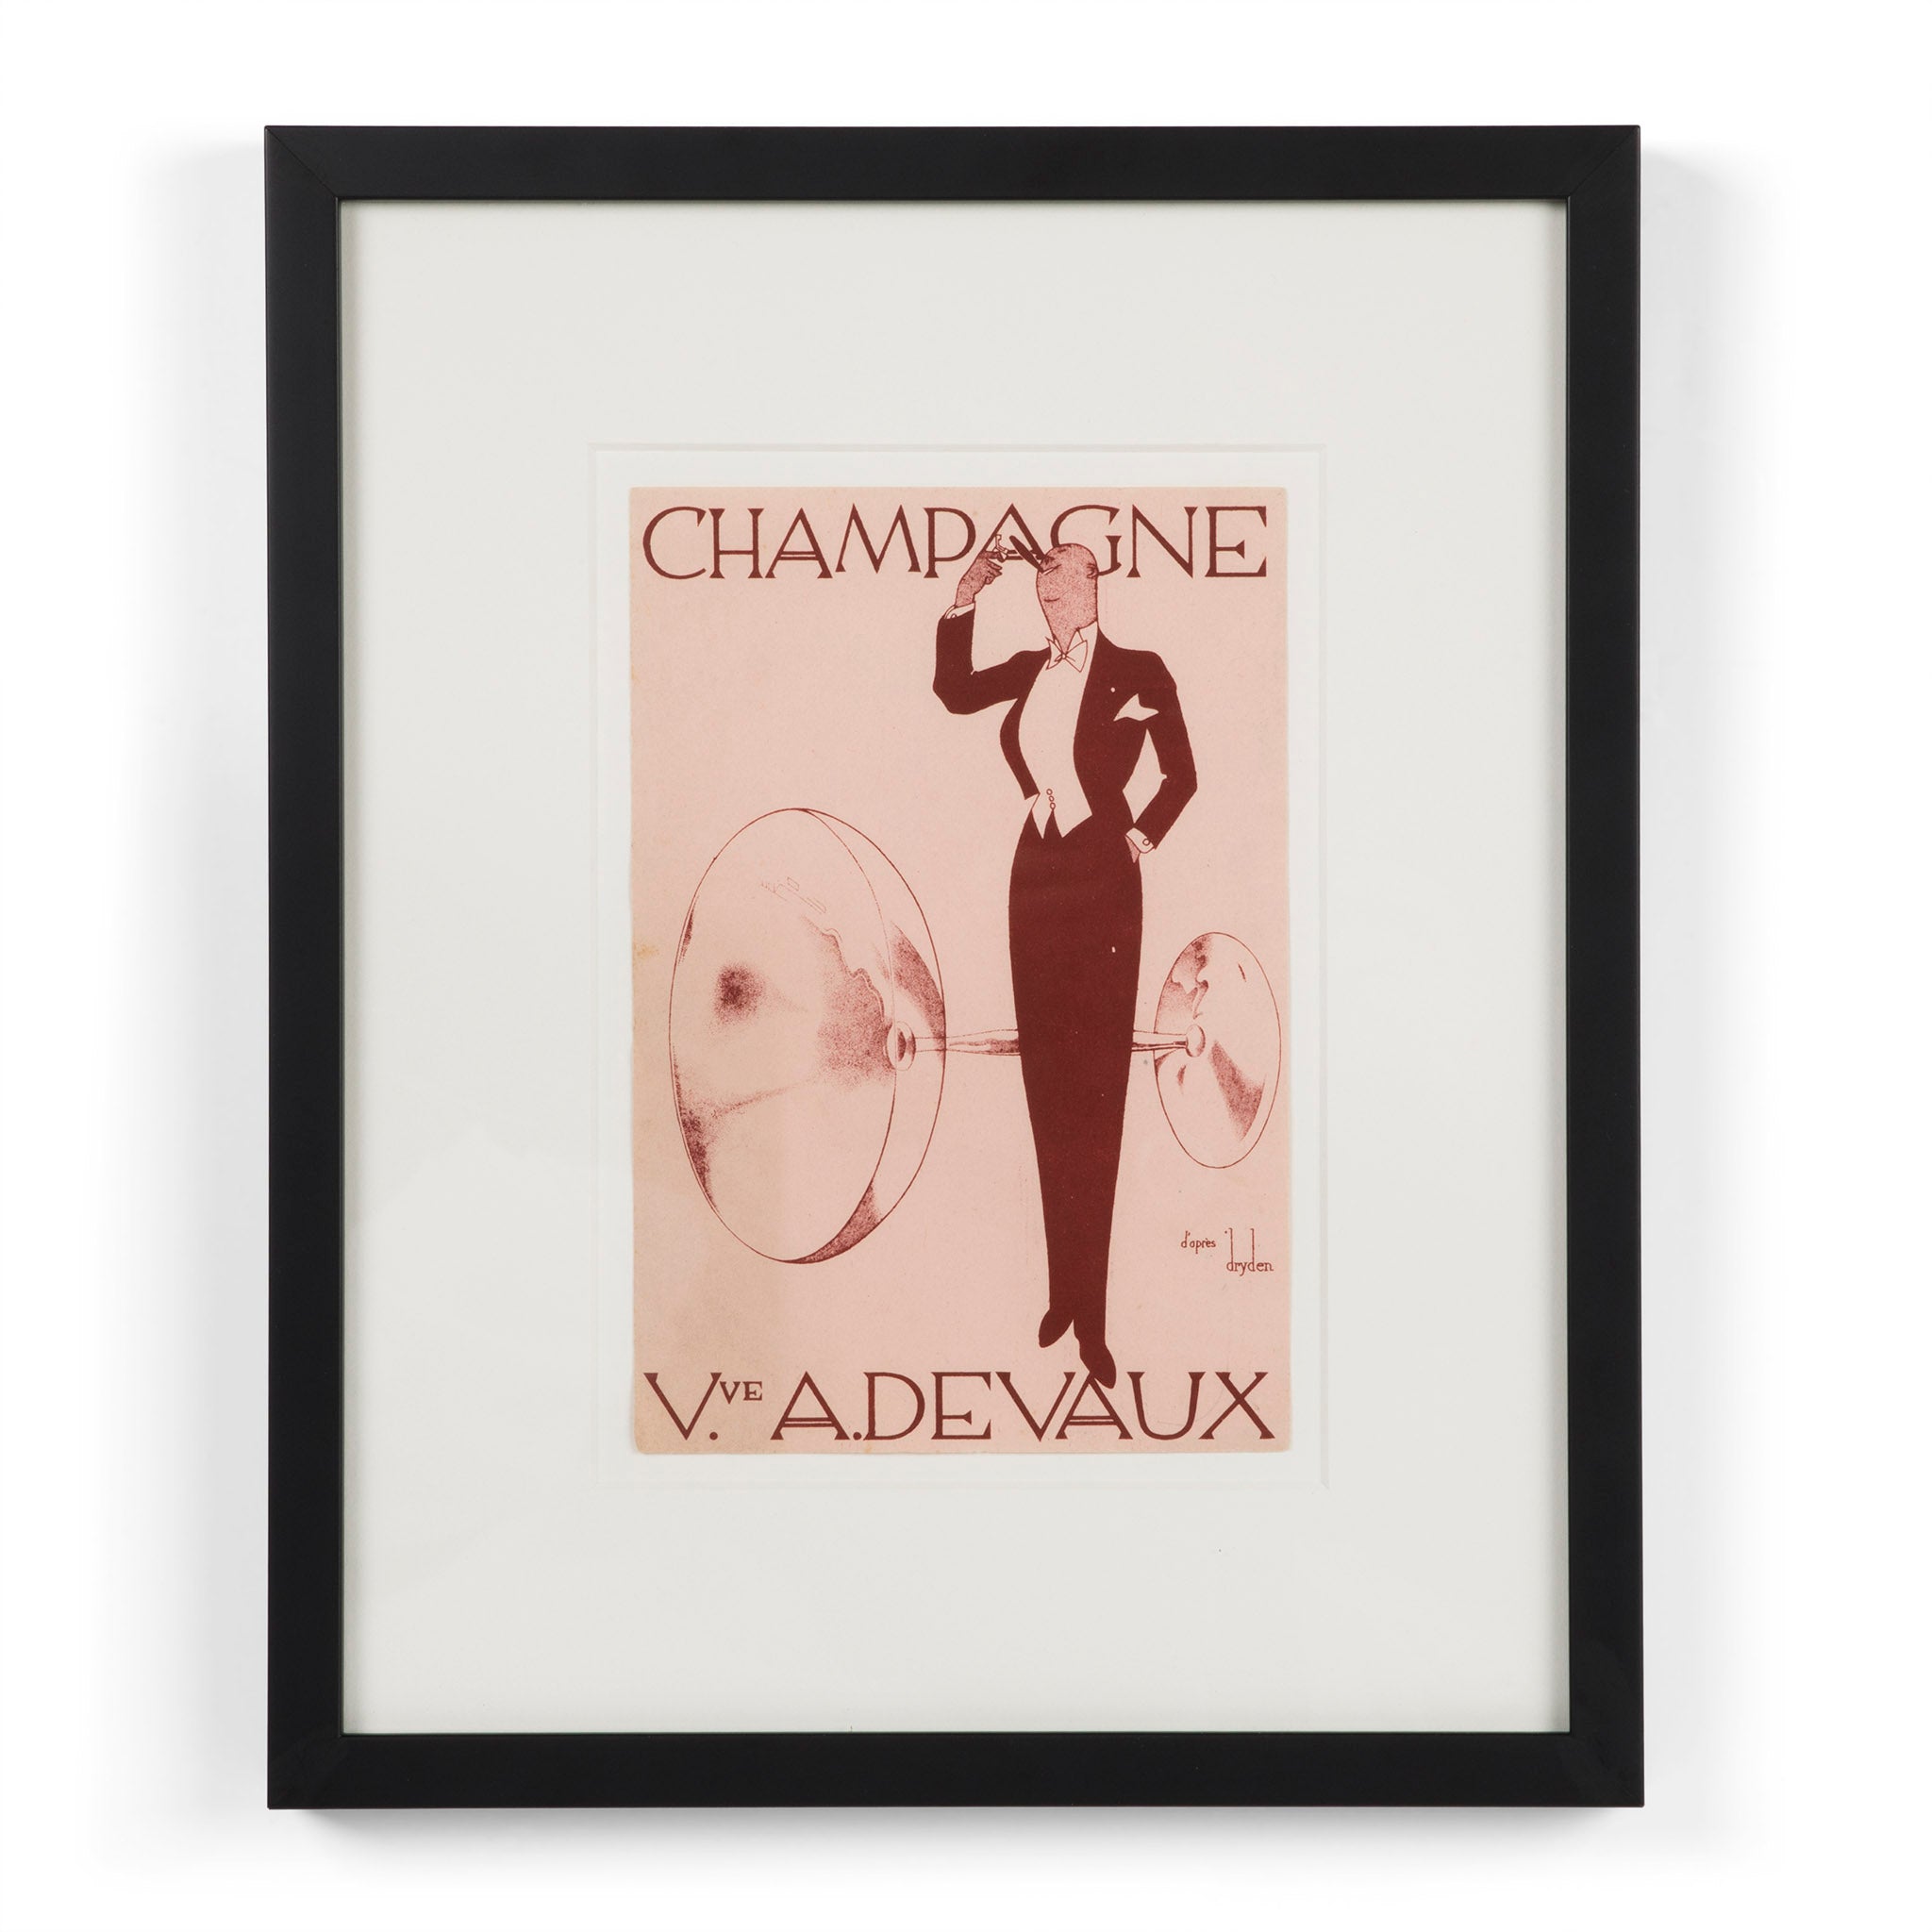 Champagne Veuve A. Devaux Advertising Label